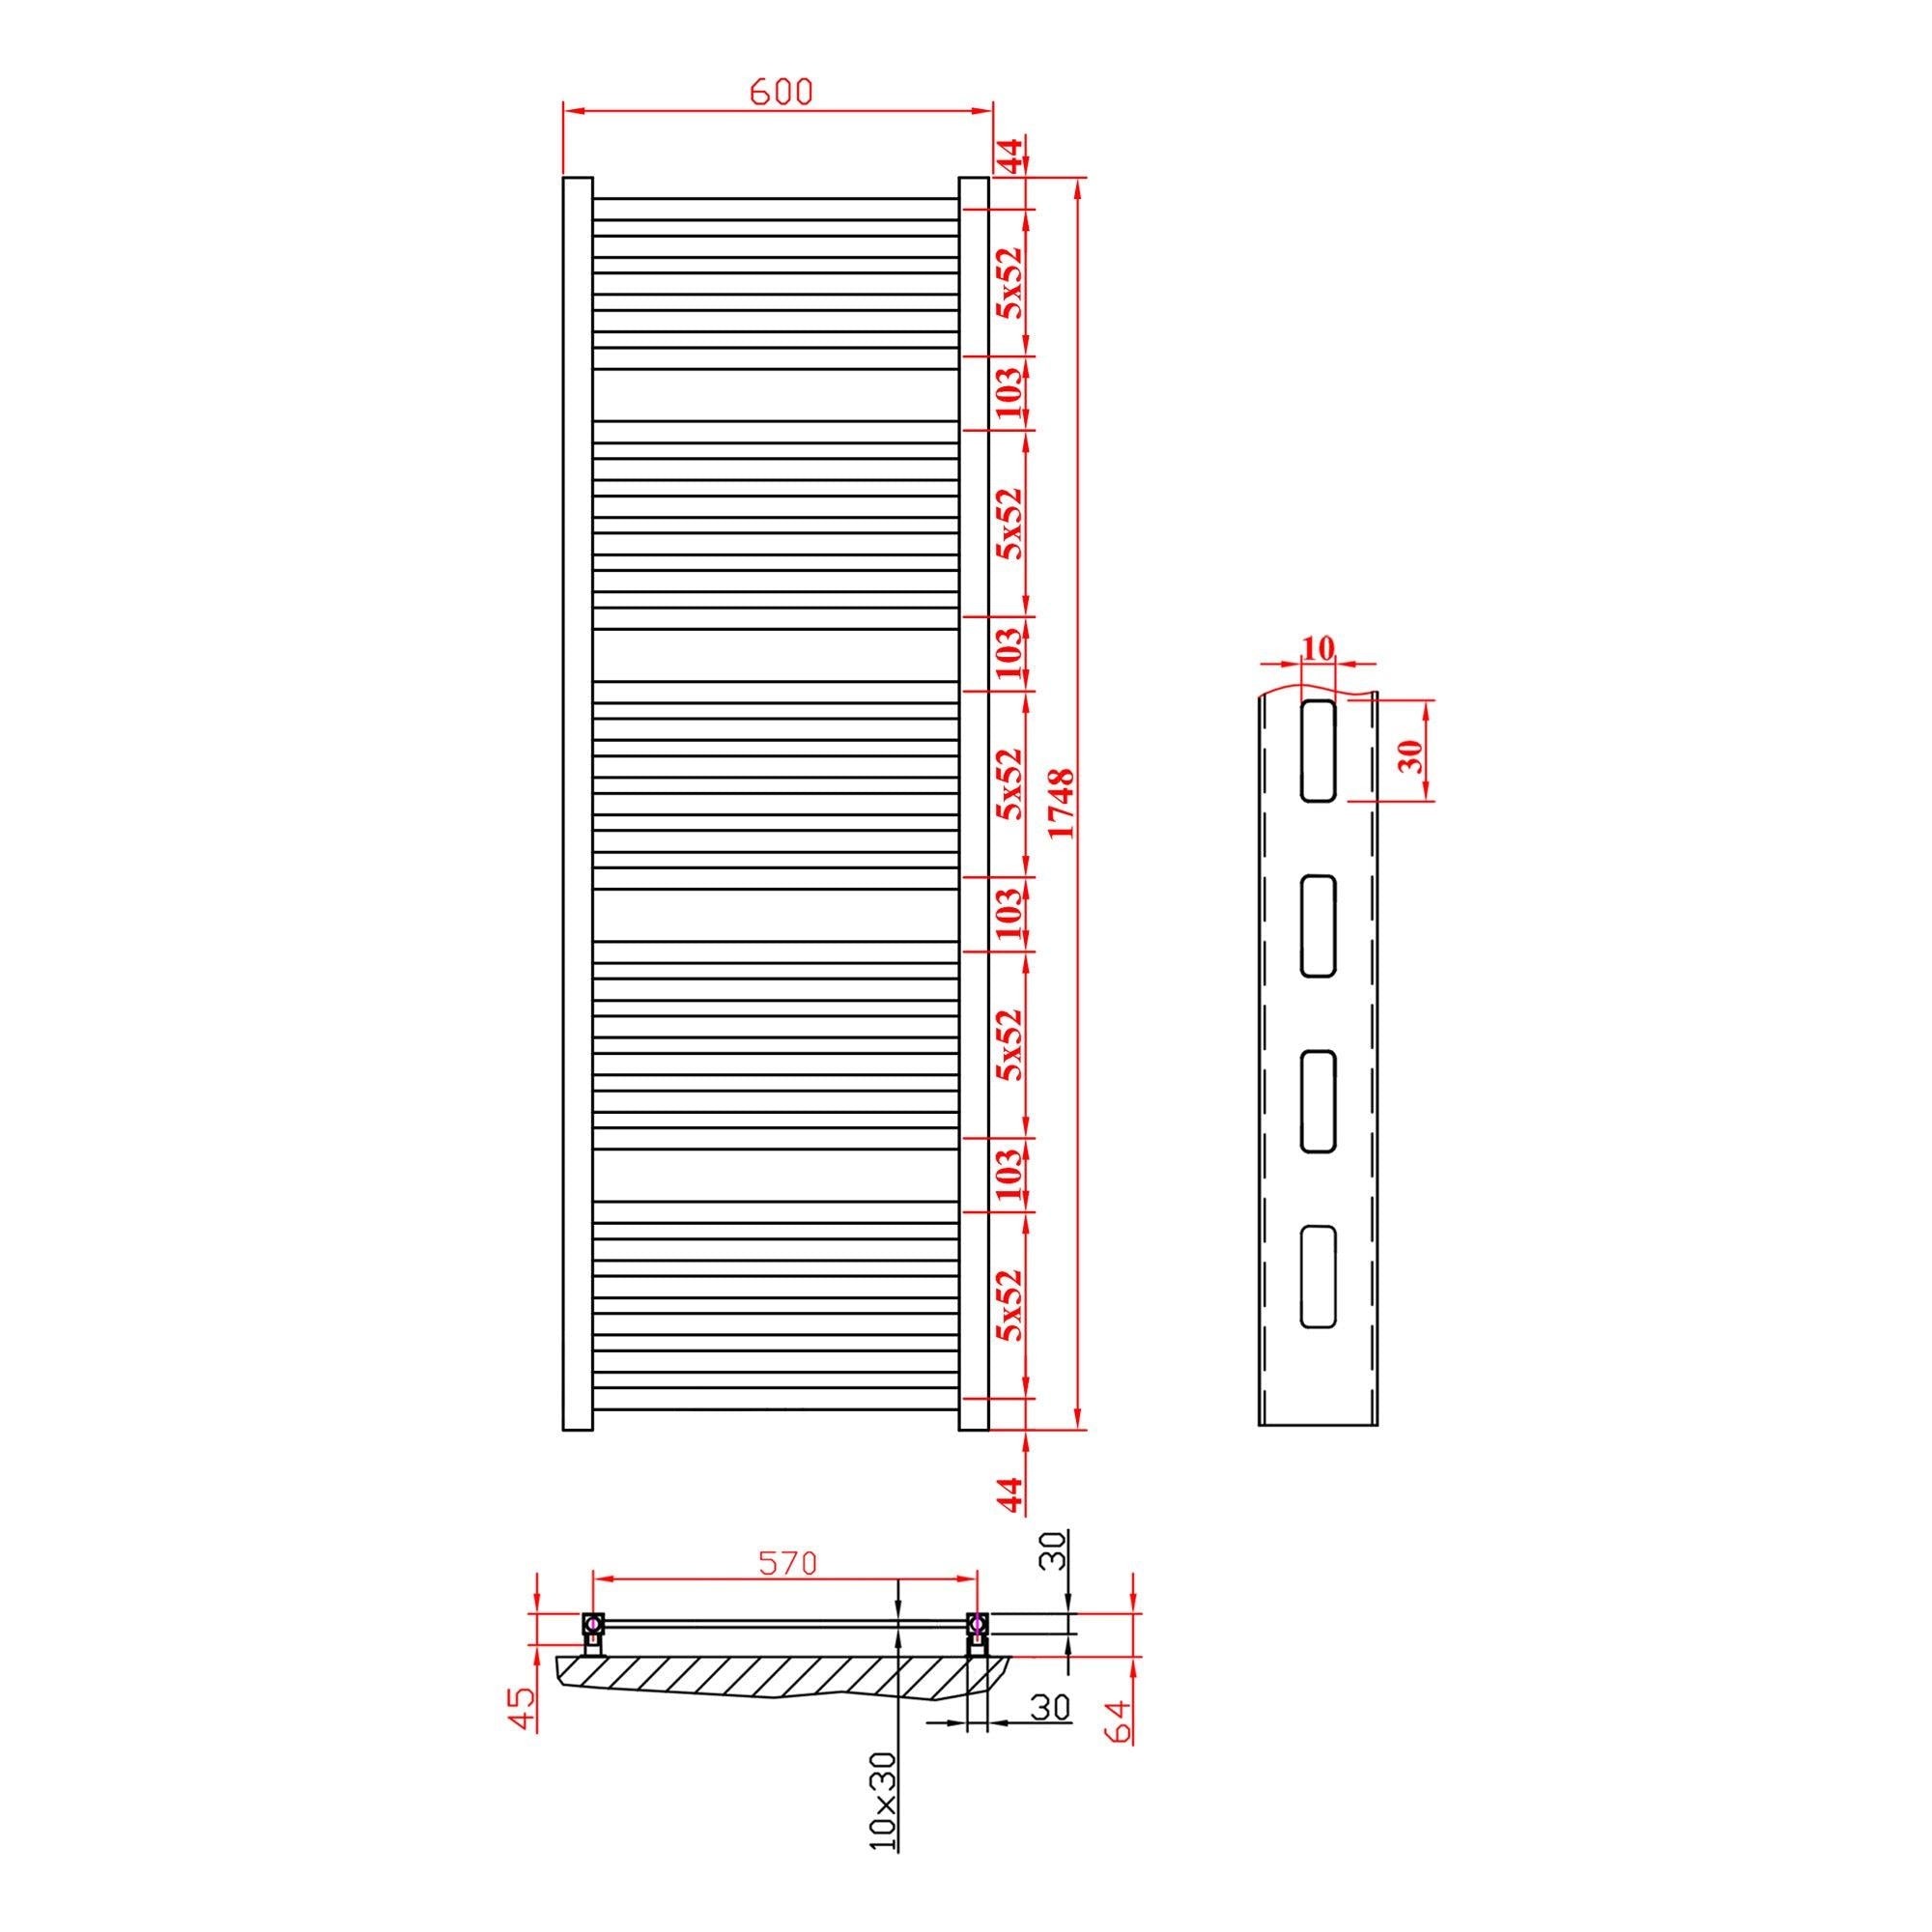 Design Badheizkörper mit Standardanschluss 1748 x 600 eckiges Profil Badezimmer Heizkörper Handtuchwärmer Handtuchhalter technische Zeichnung - heizkoerper.shop